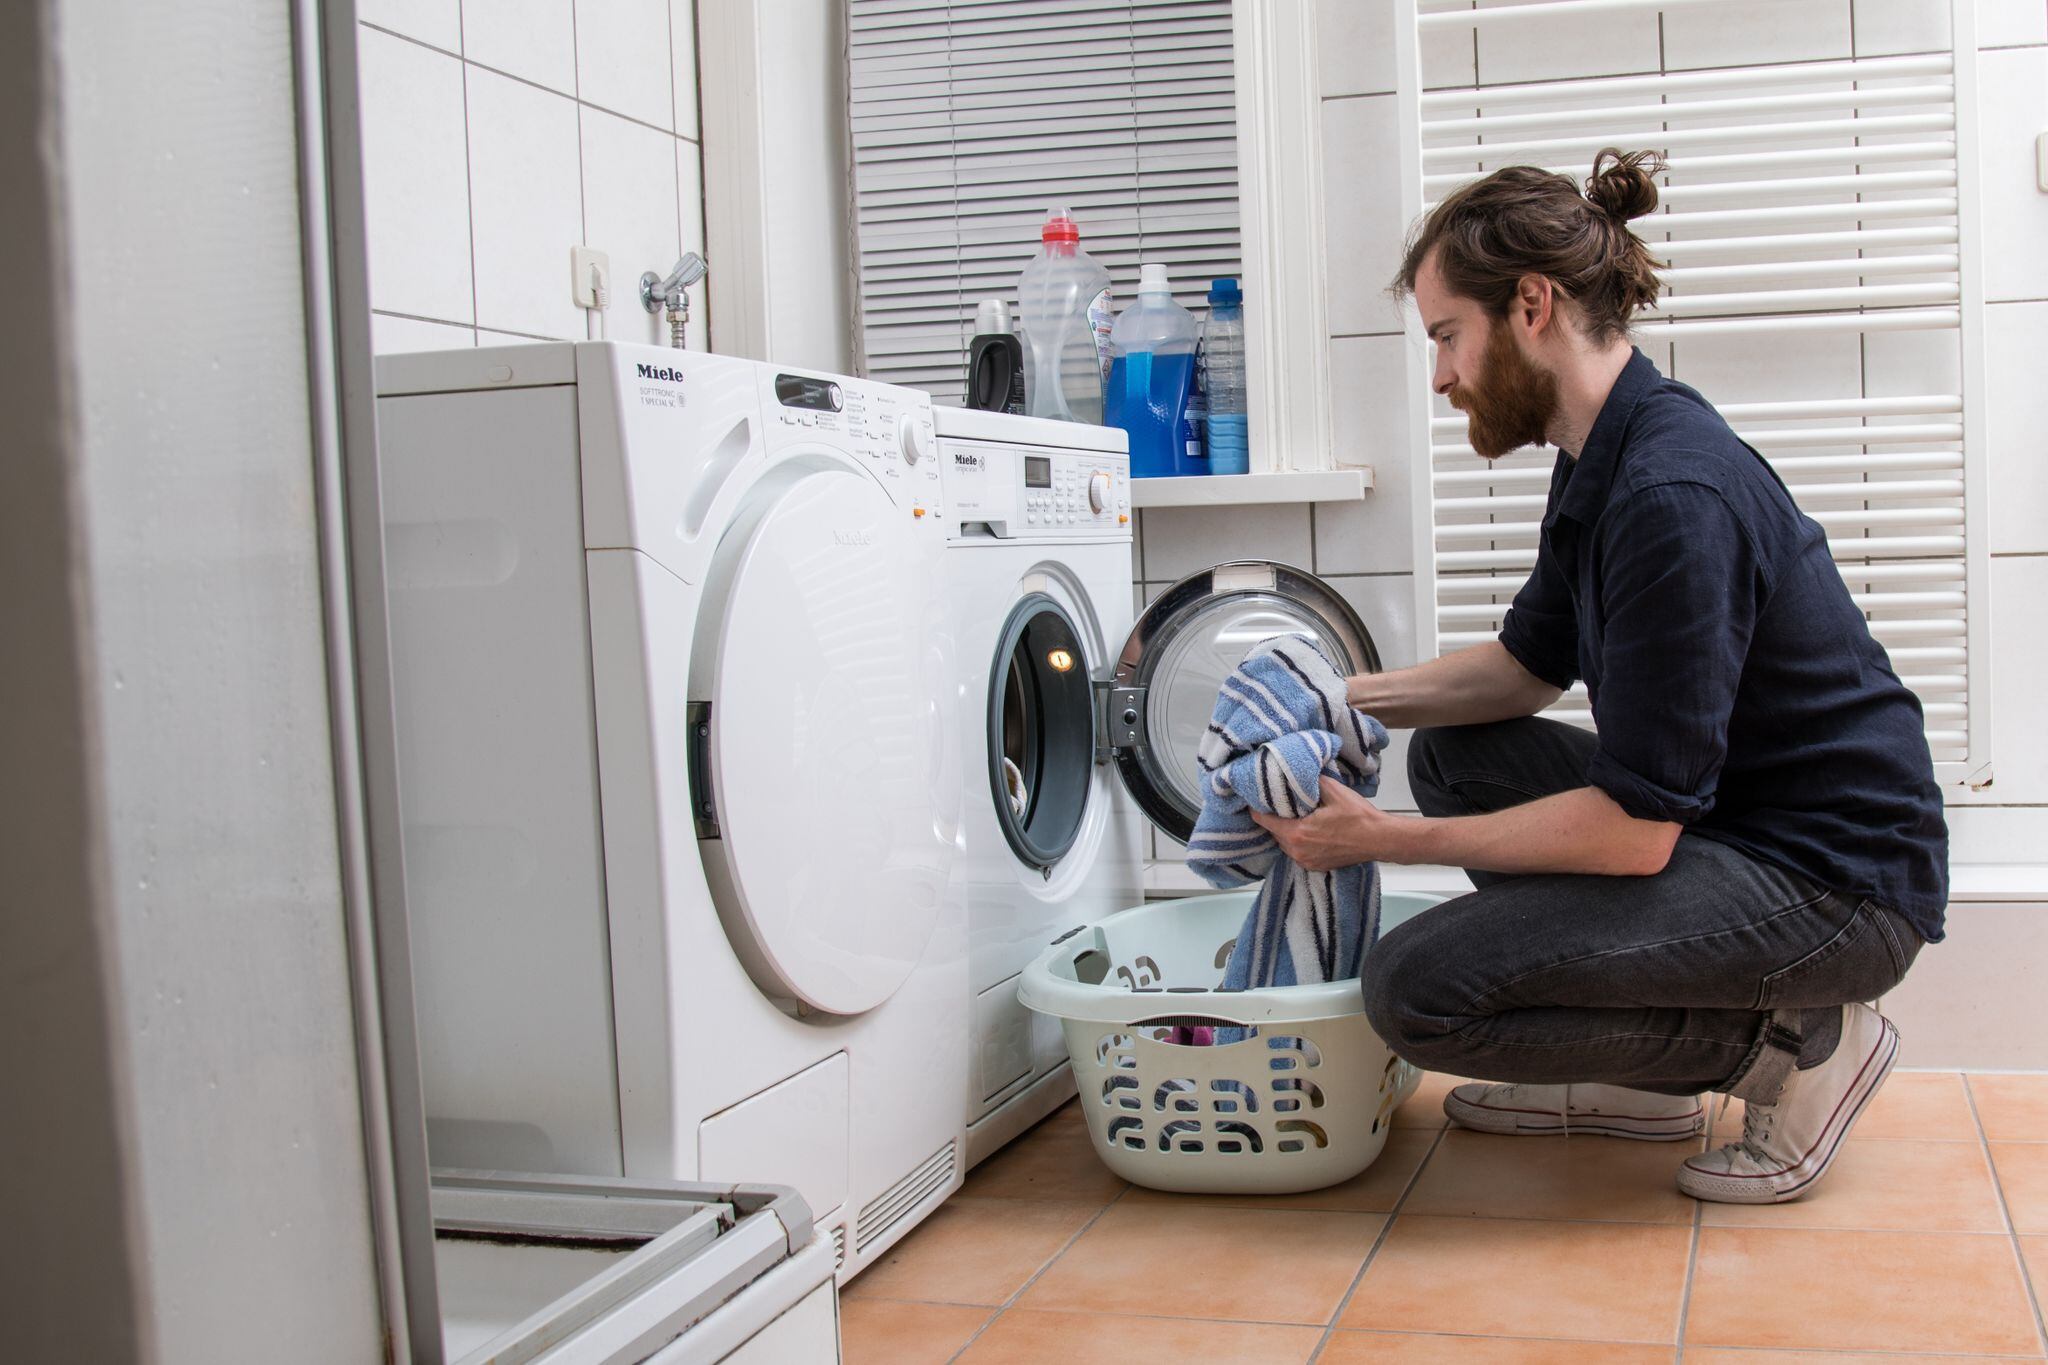 Se debe elegir una lavadora que se pueda adaptar fácilmente al hogar y no tome más espacio del que requiere. (Foto: Christin Klose/dpa).